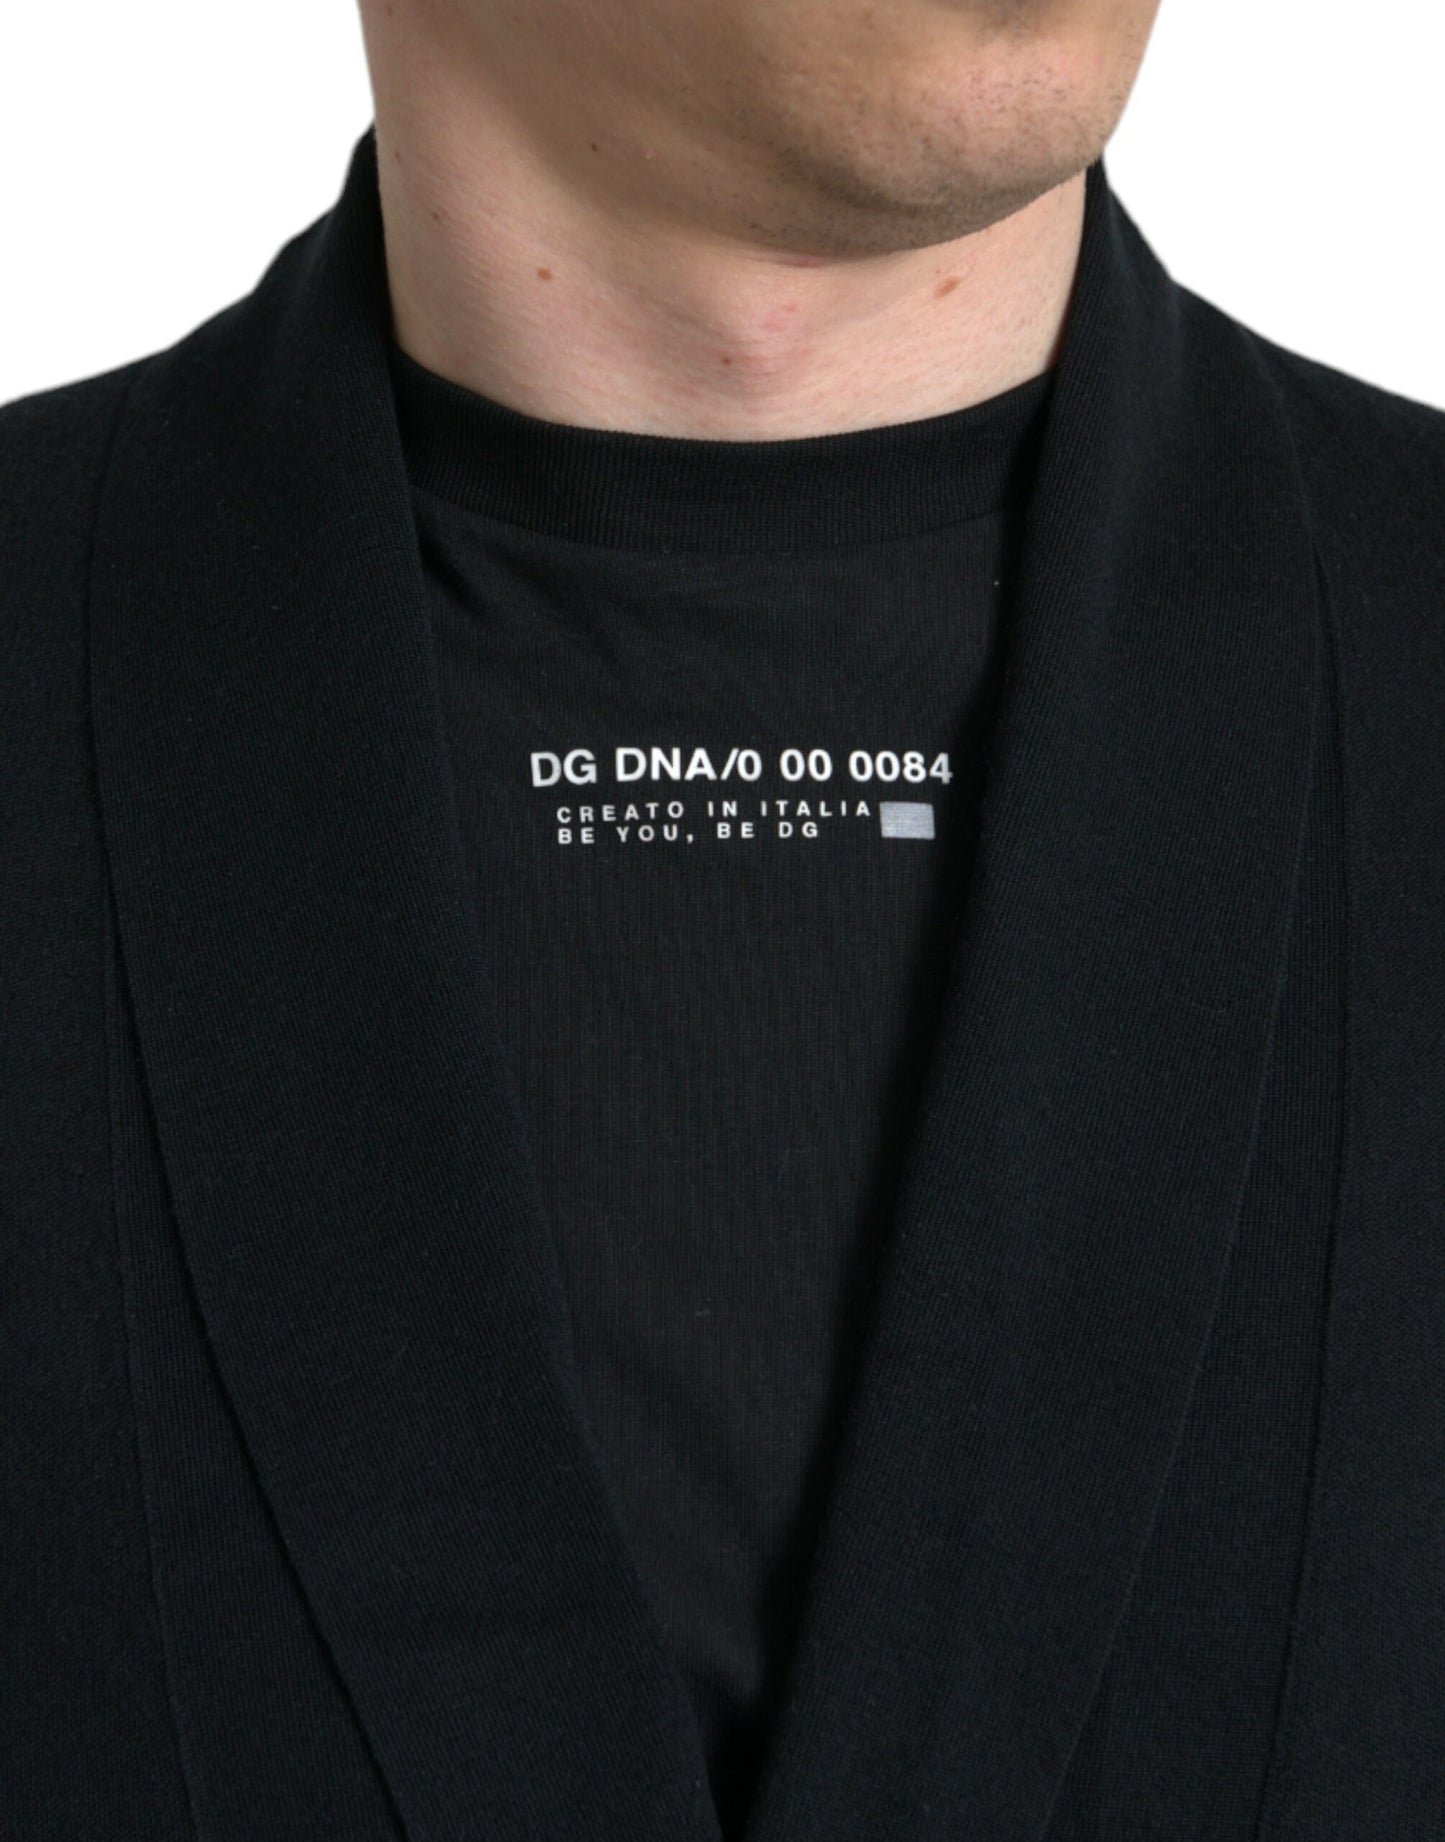 Dolce & Gabbana Elegant Black Cashmere Robe with Waist Belt